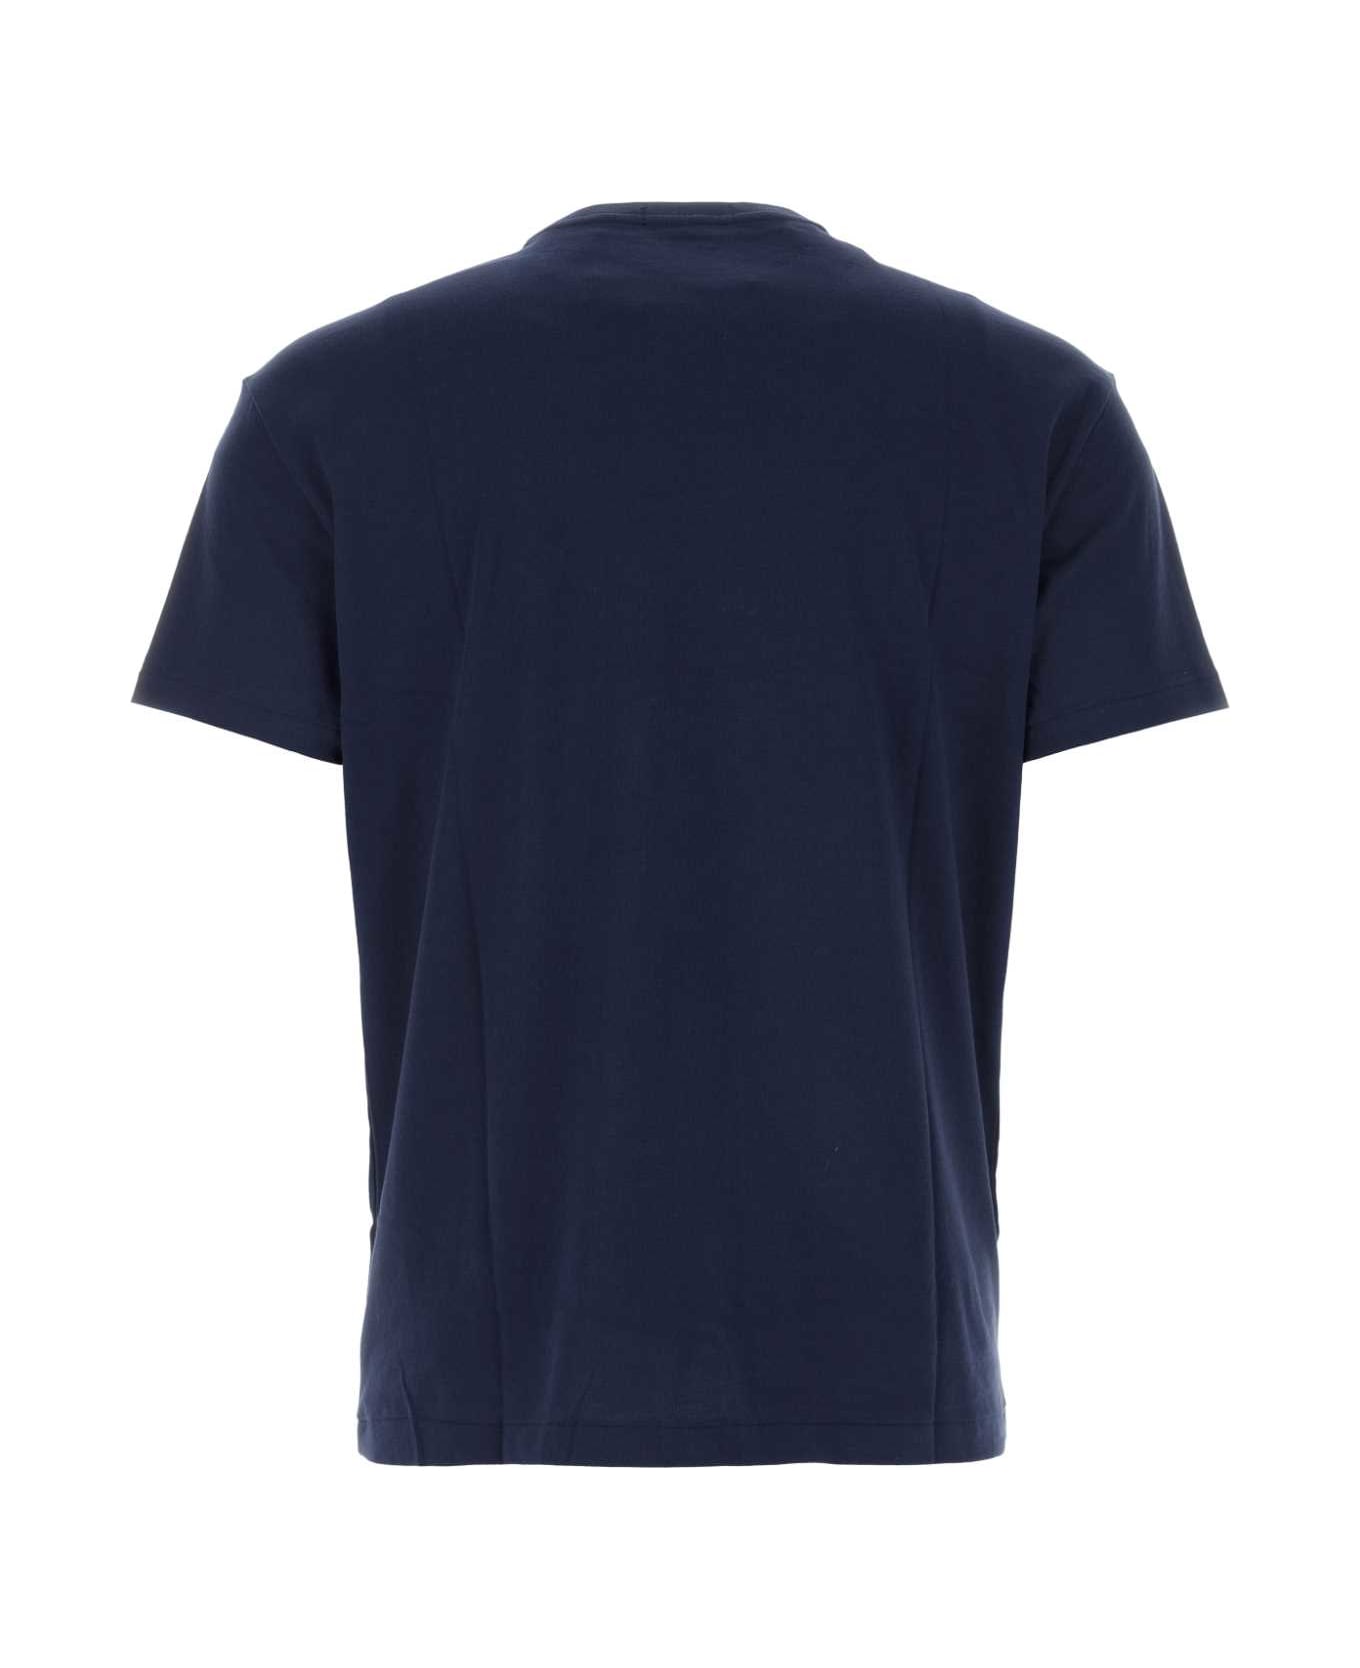 Polo Ralph Lauren Navy Blue Cotton T-shirt - BLUE